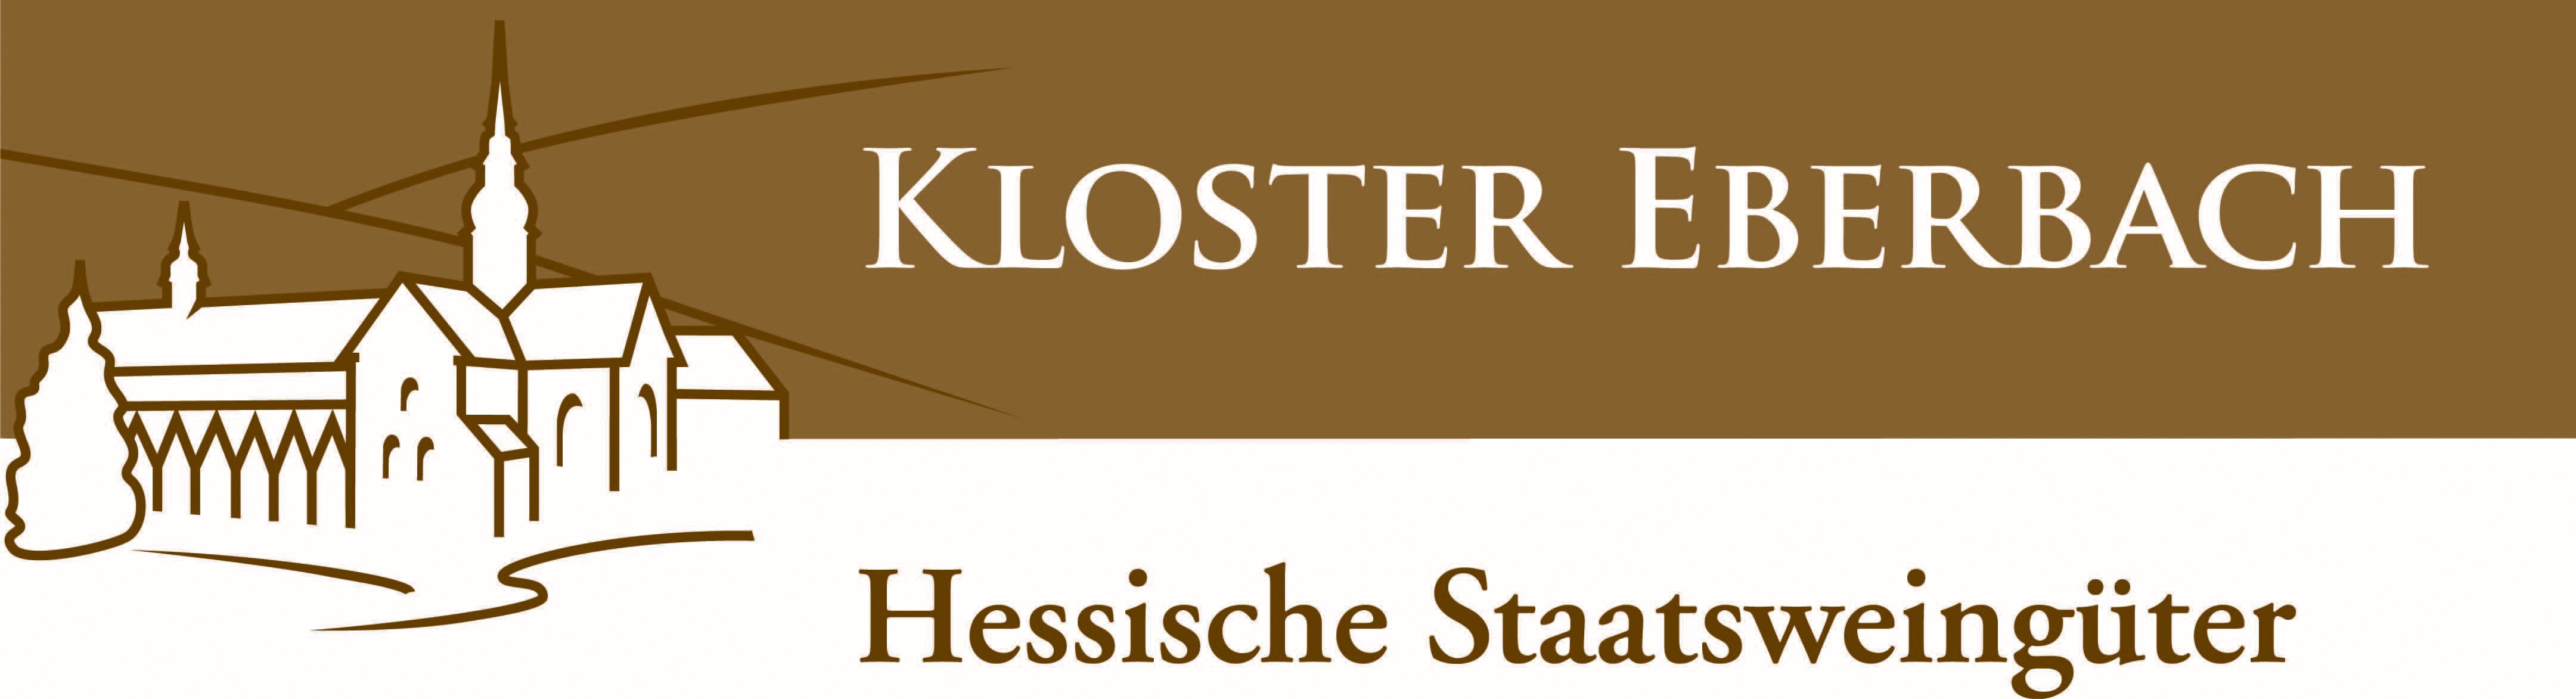 Kloster Eberbach Logo